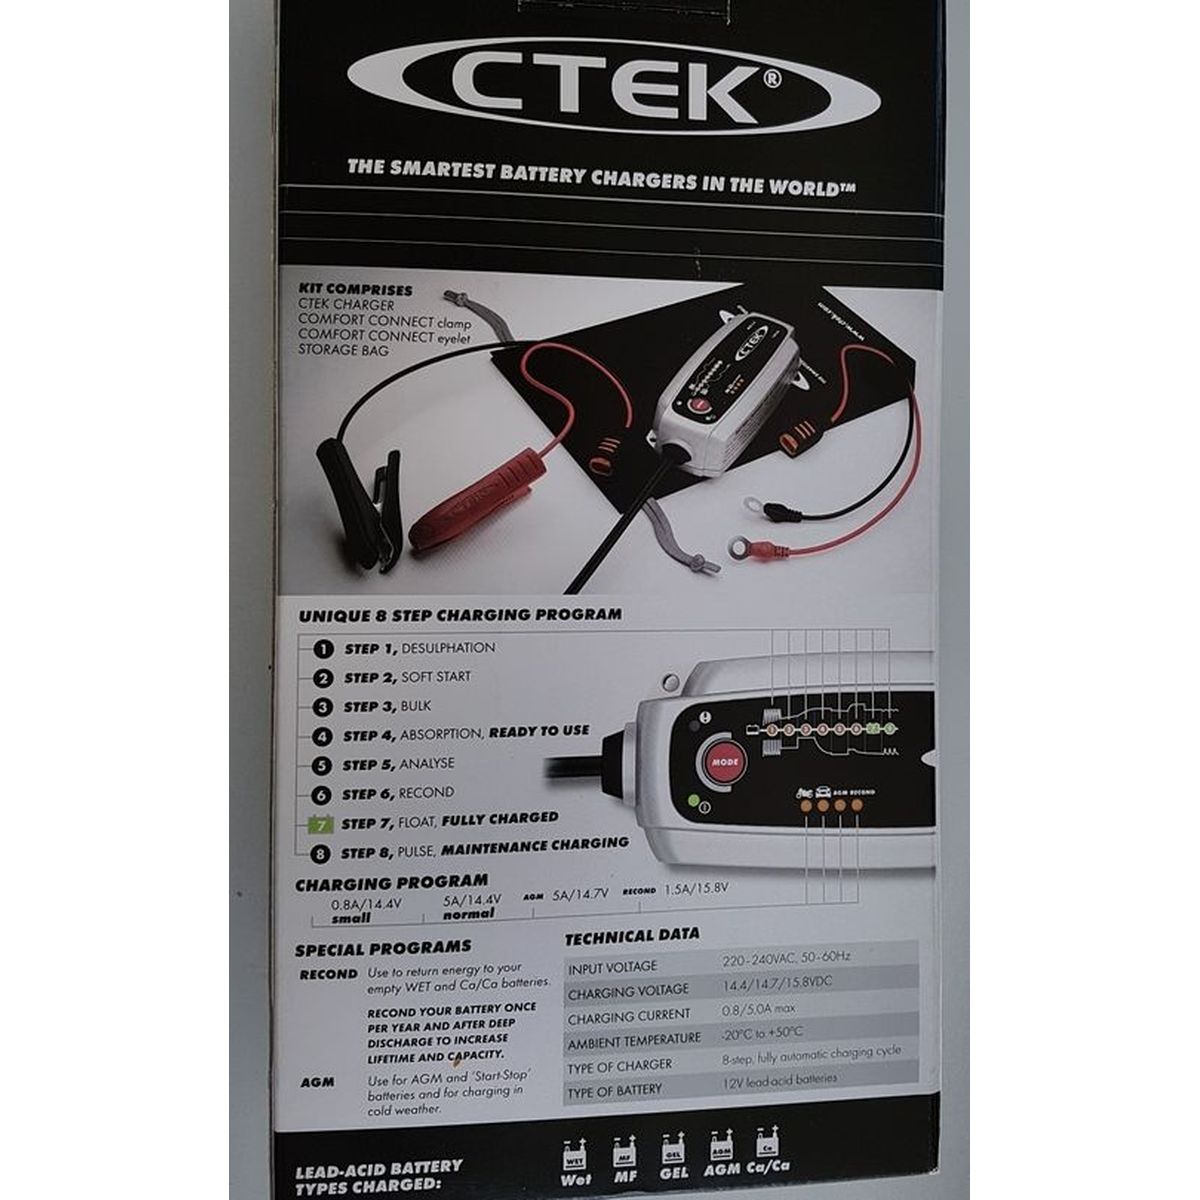 CTEK MXS 5.0 56-305 Automatikladegerät 12 V 0.8 A, 5 A kaufen